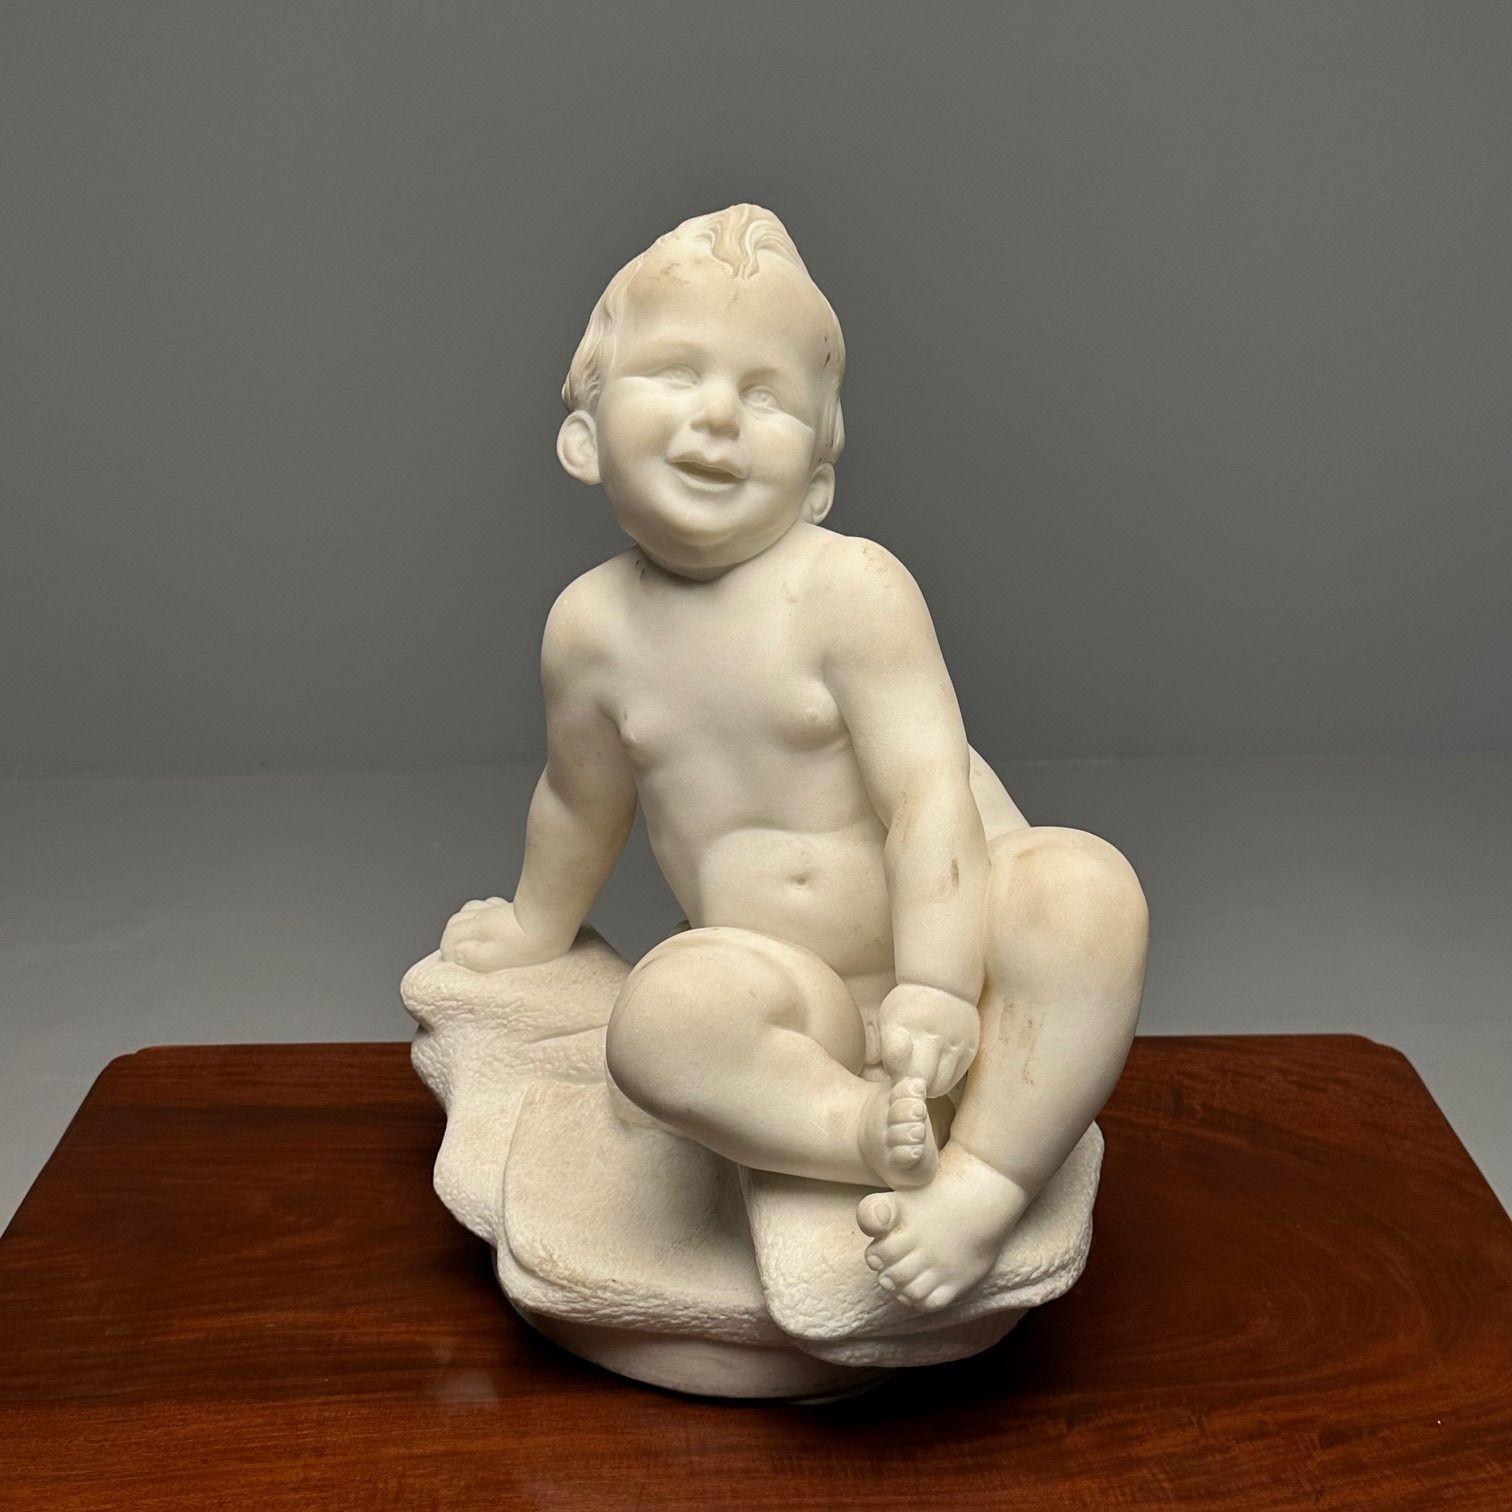 Statue d'un enfant nu assis en marbre sculpté, 19e/début du 20e siècle

Une belle figure finement détaillée d'un enfant de sexe masculin assis sur une base et jouant avec ses orteils. Cette statue présente des organes génitaux exposés avec